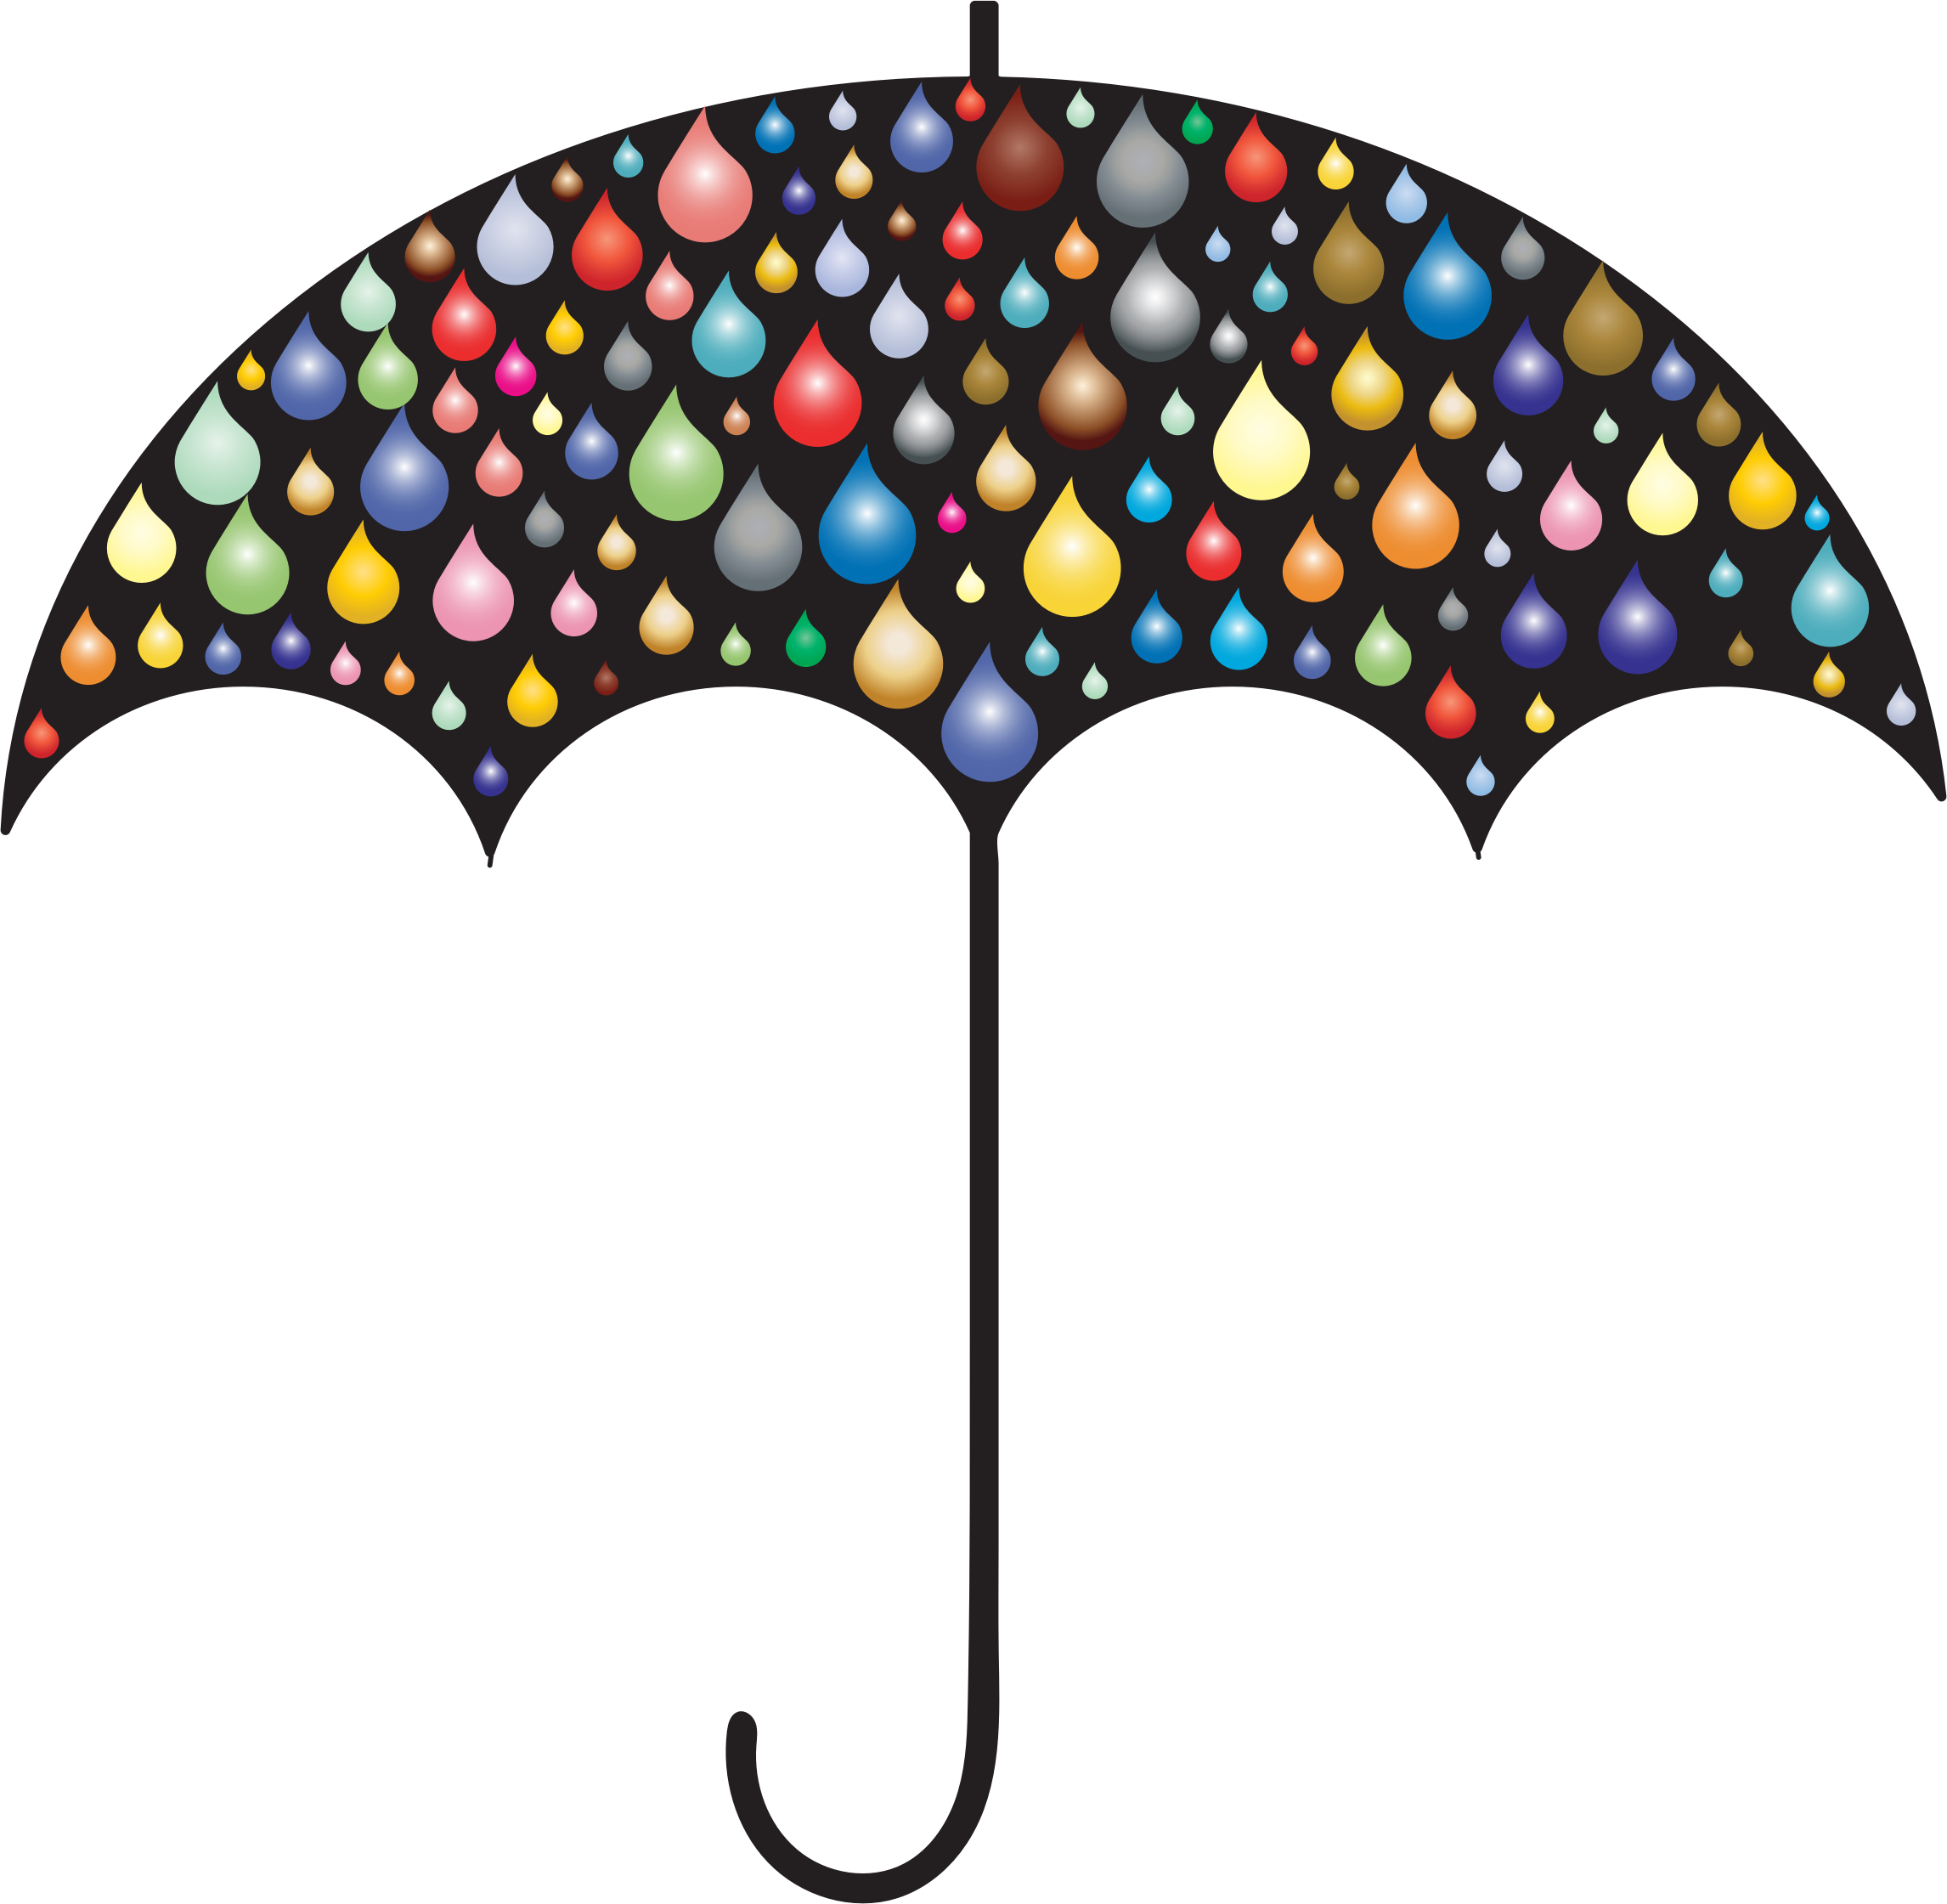 Prismatic Rain Drops Umbrella Silhouette 2 SVG Clip arts